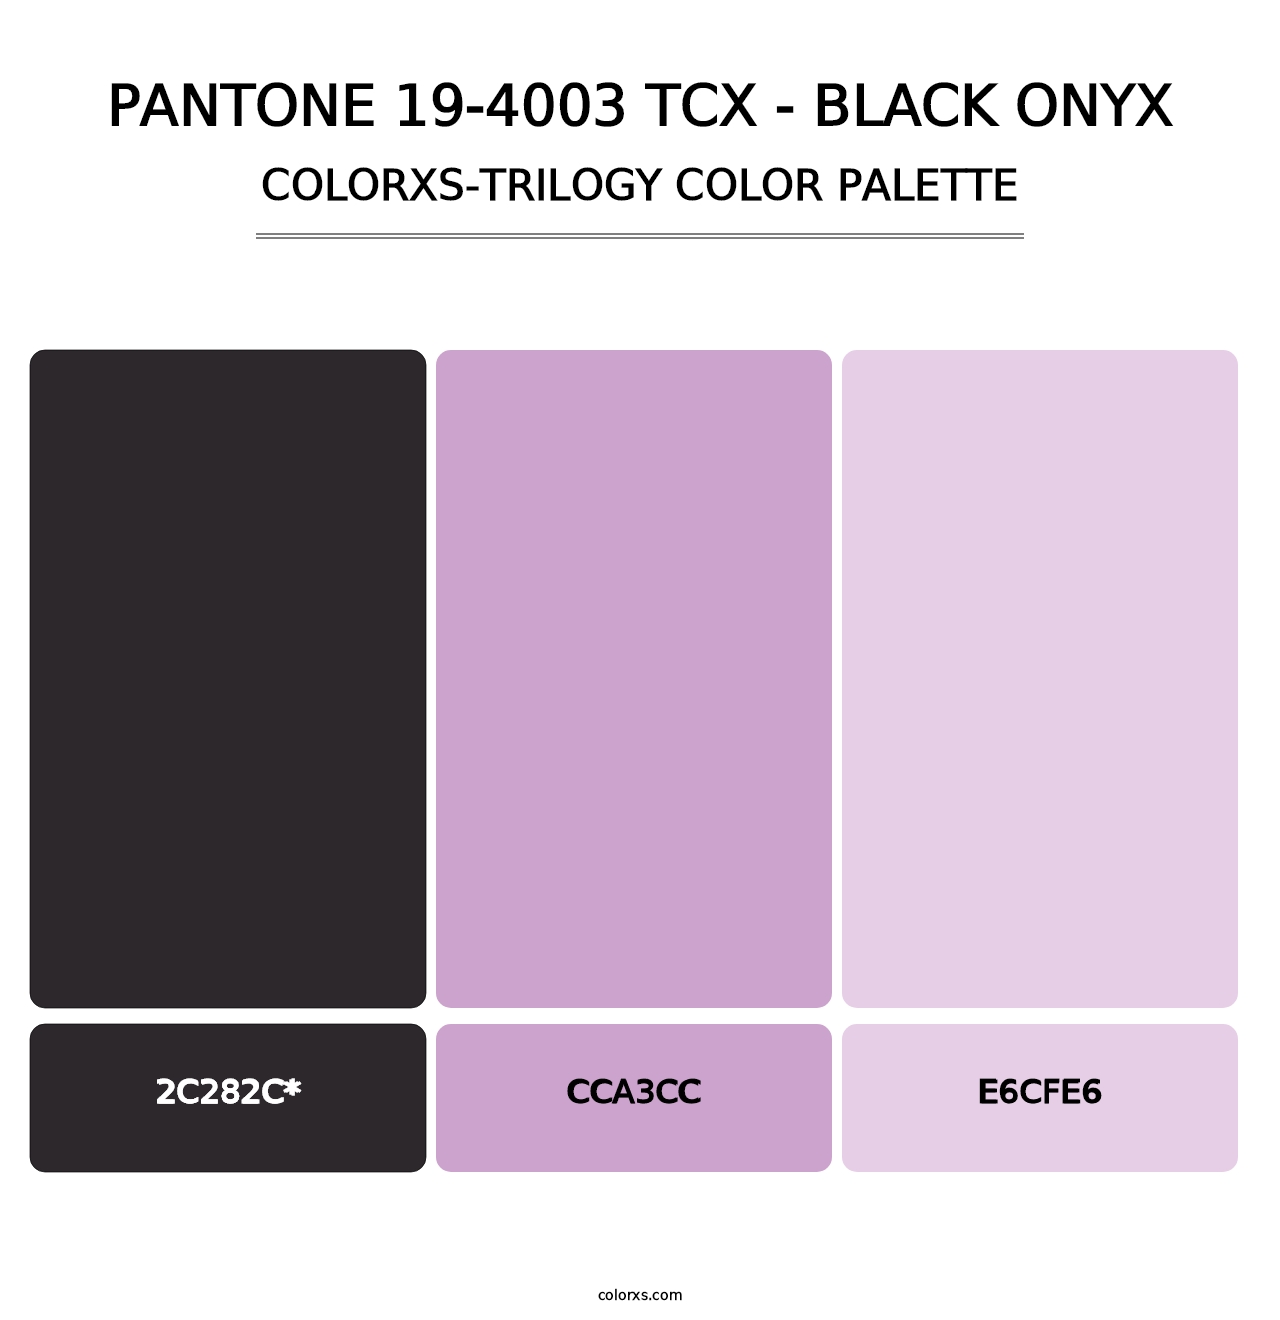 PANTONE 19-4003 TCX - Black Onyx - Colorxs Trilogy Palette